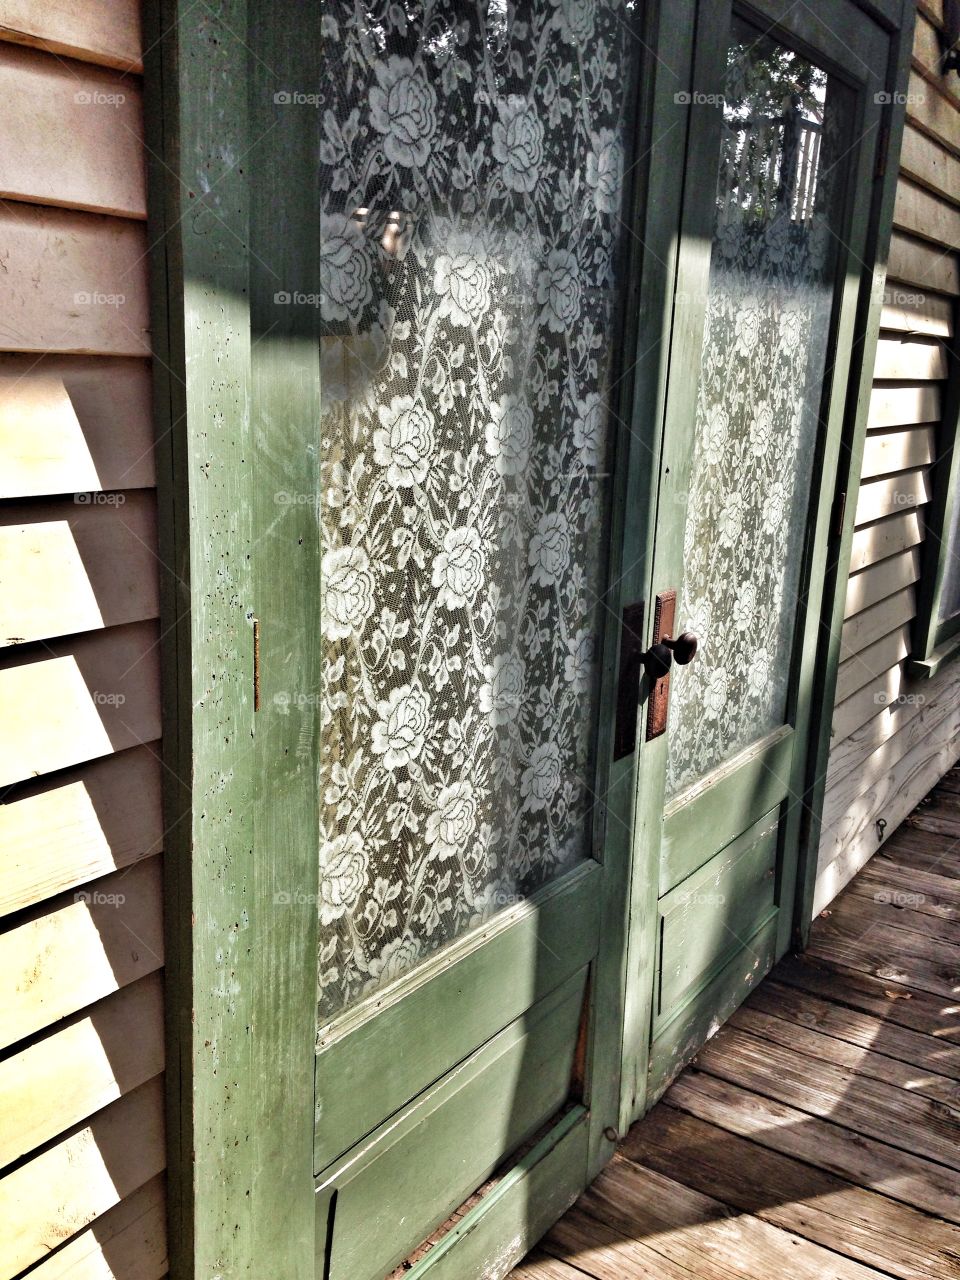 Door to the past. Antique doors at six
Flags